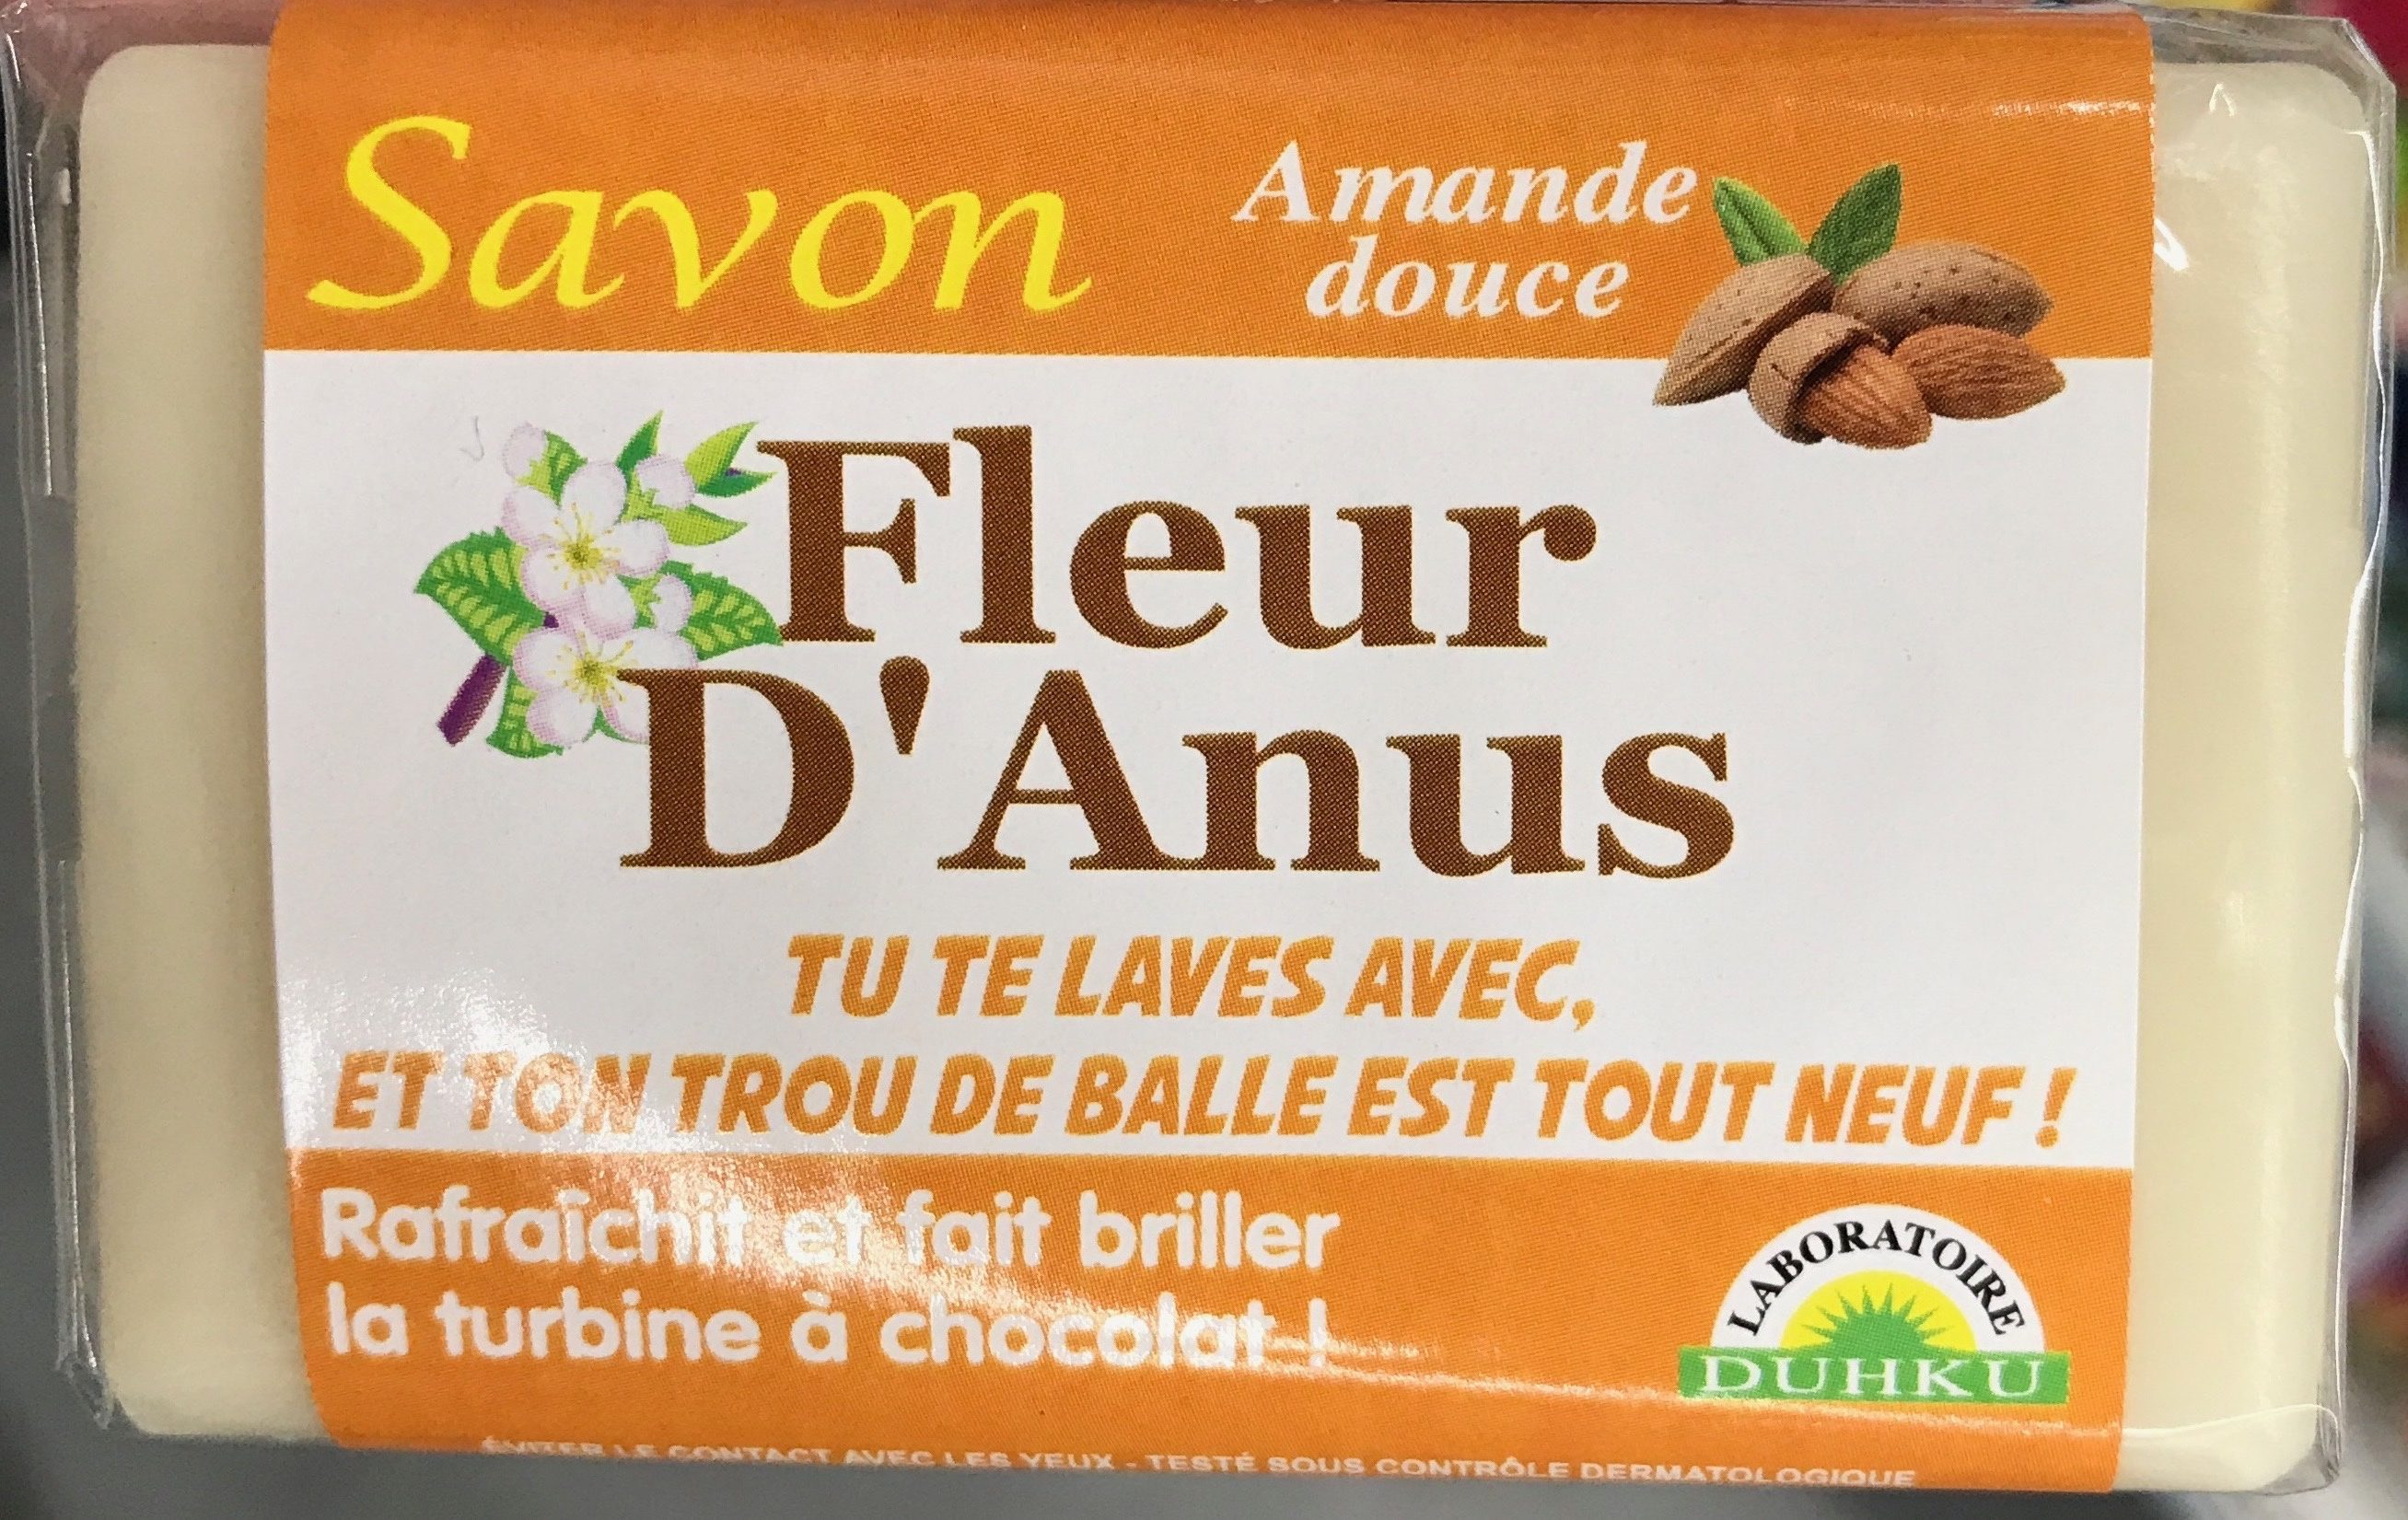 Savon Fleur d'Anus Amande douce - Produto - fr